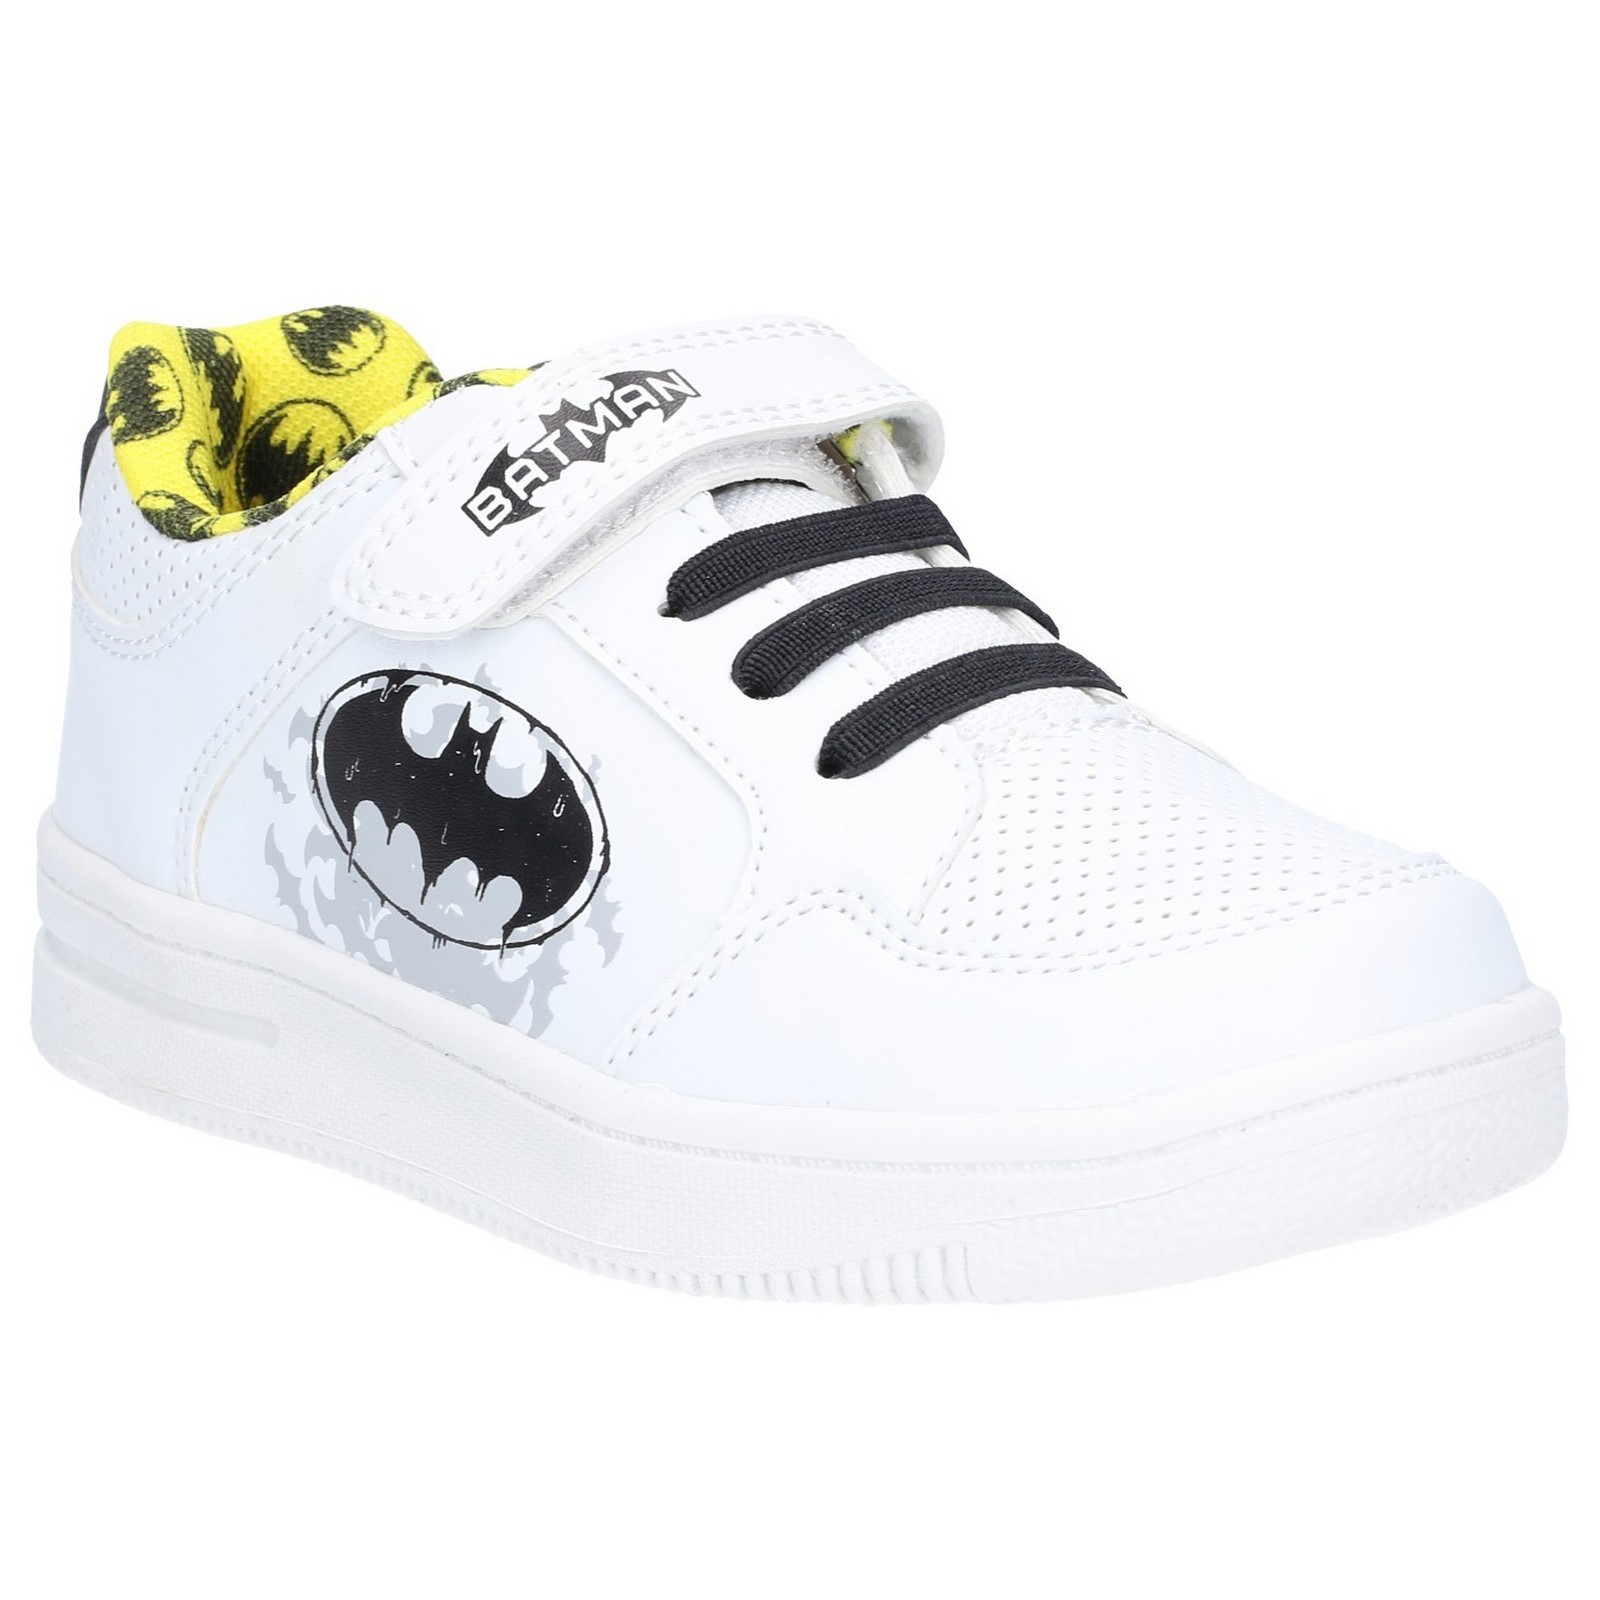 Batman Low Sneakers touch fastening shoe